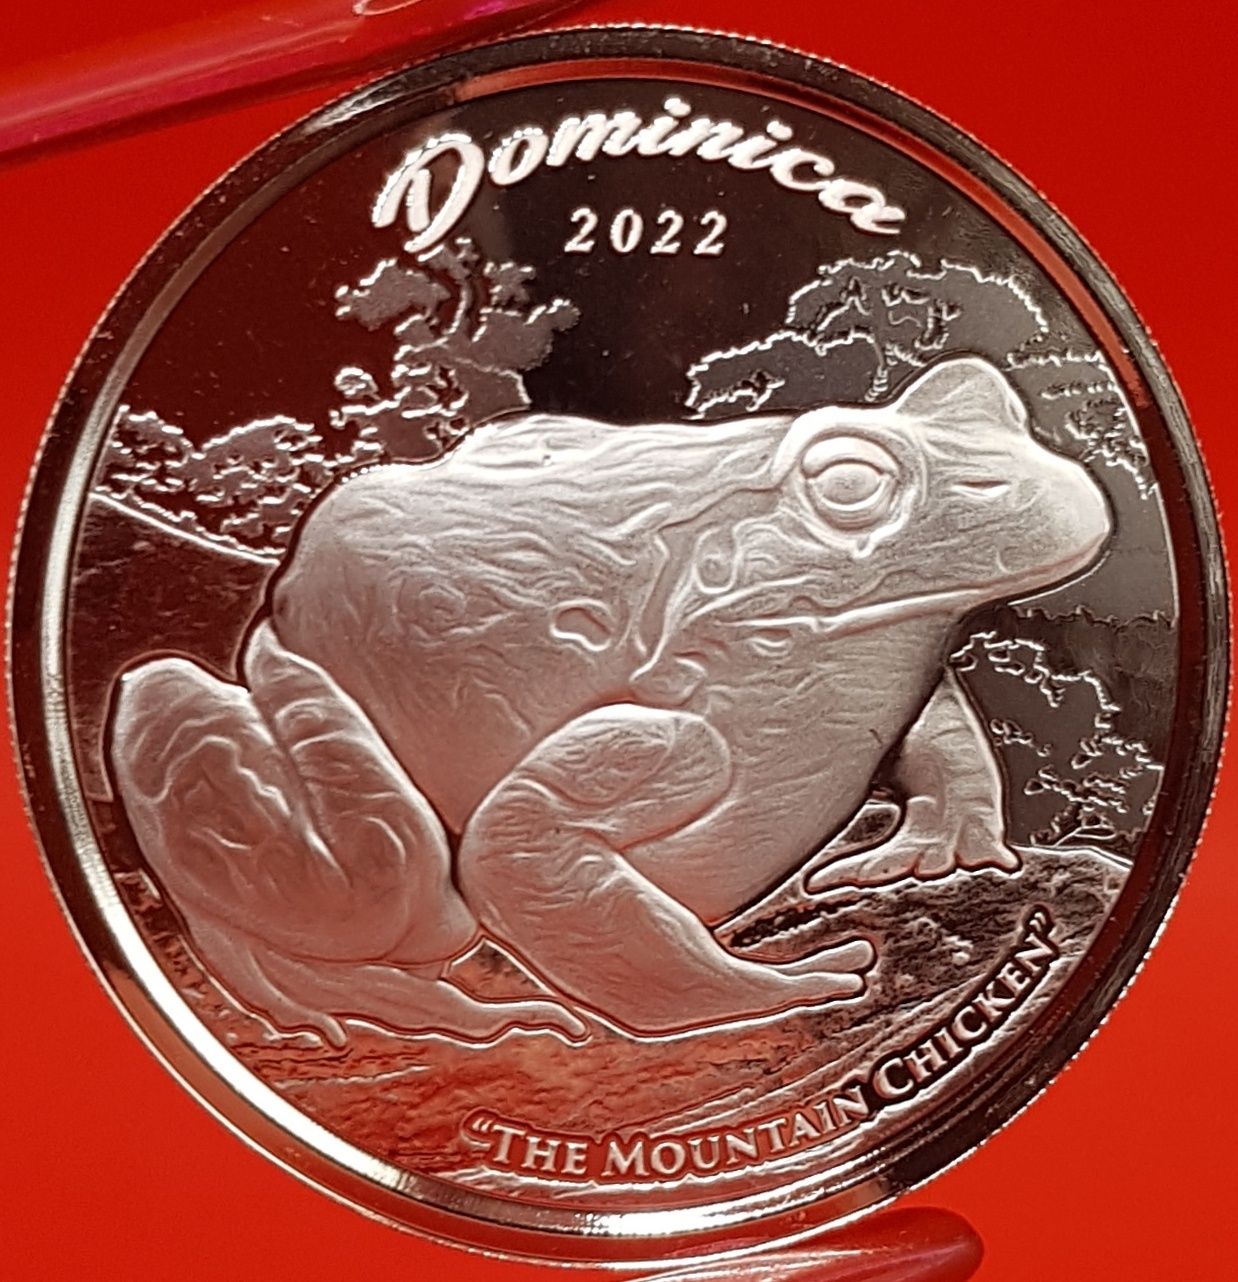 SUA Scottsdale Mint EC8 2022 TOATA monede argint lingou 999 pur